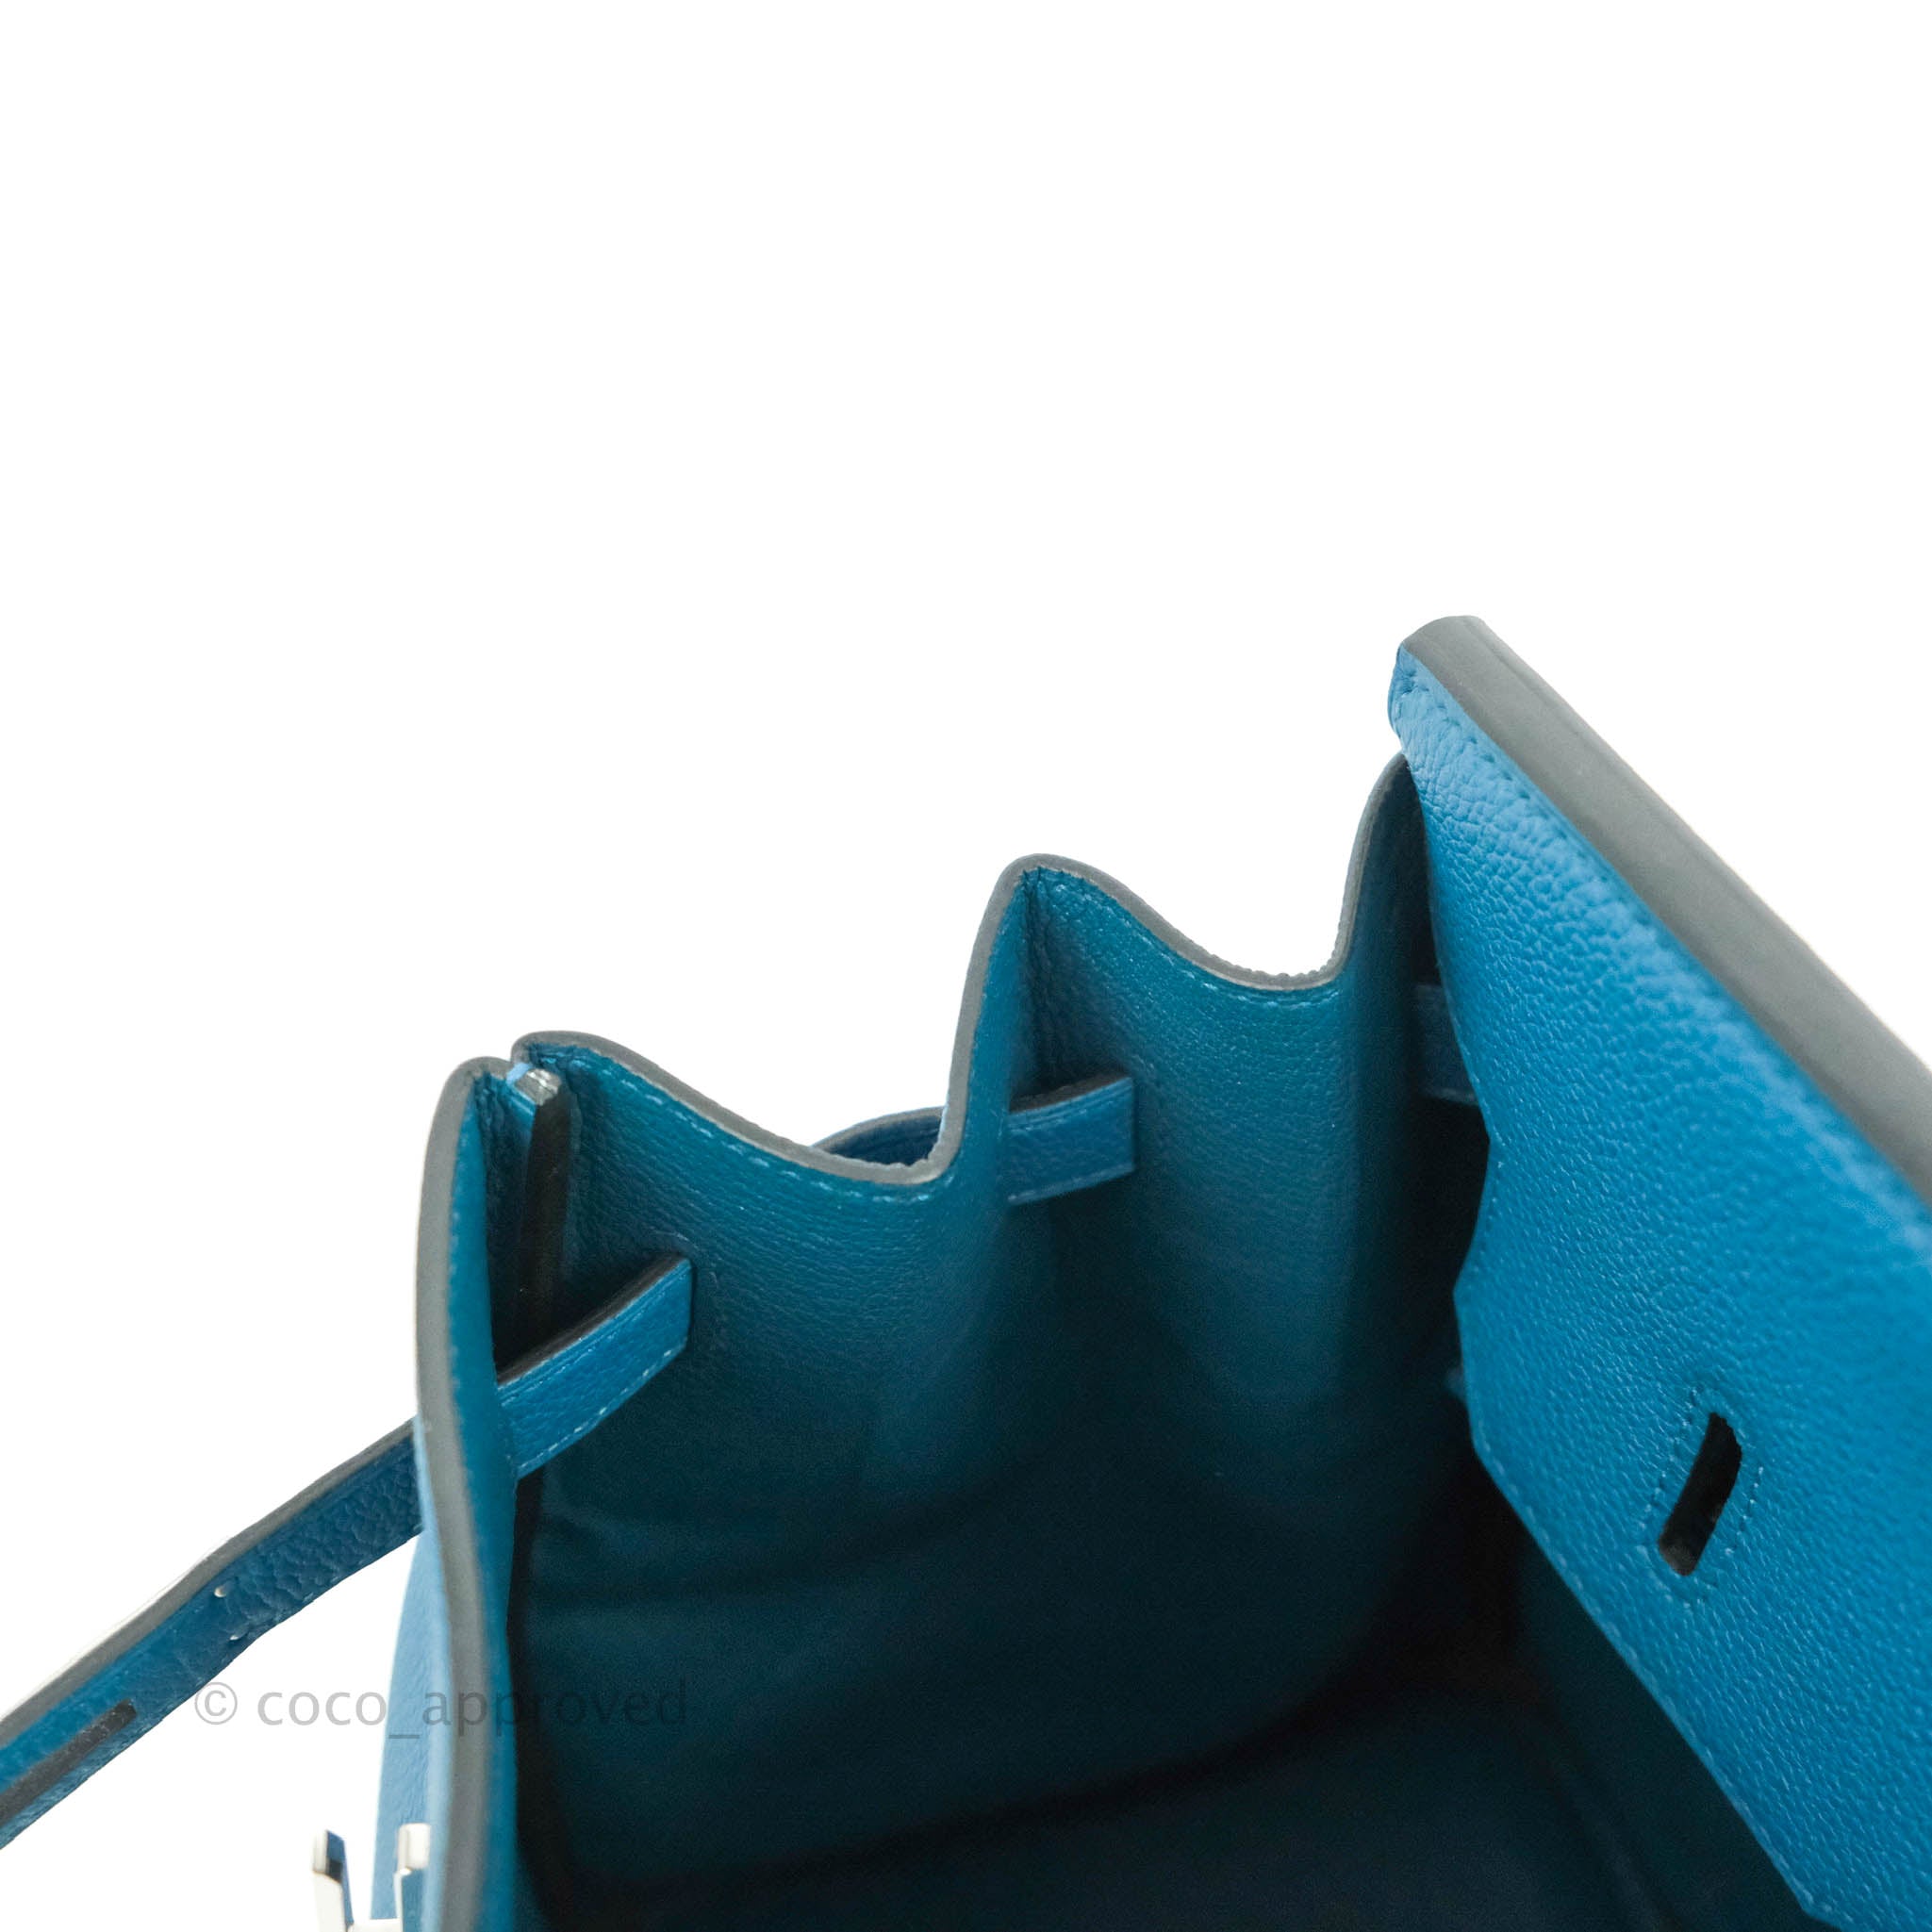 Hermès Birkin 35 Cobalt Togo Palladium Hardware – Coco Approved Studio